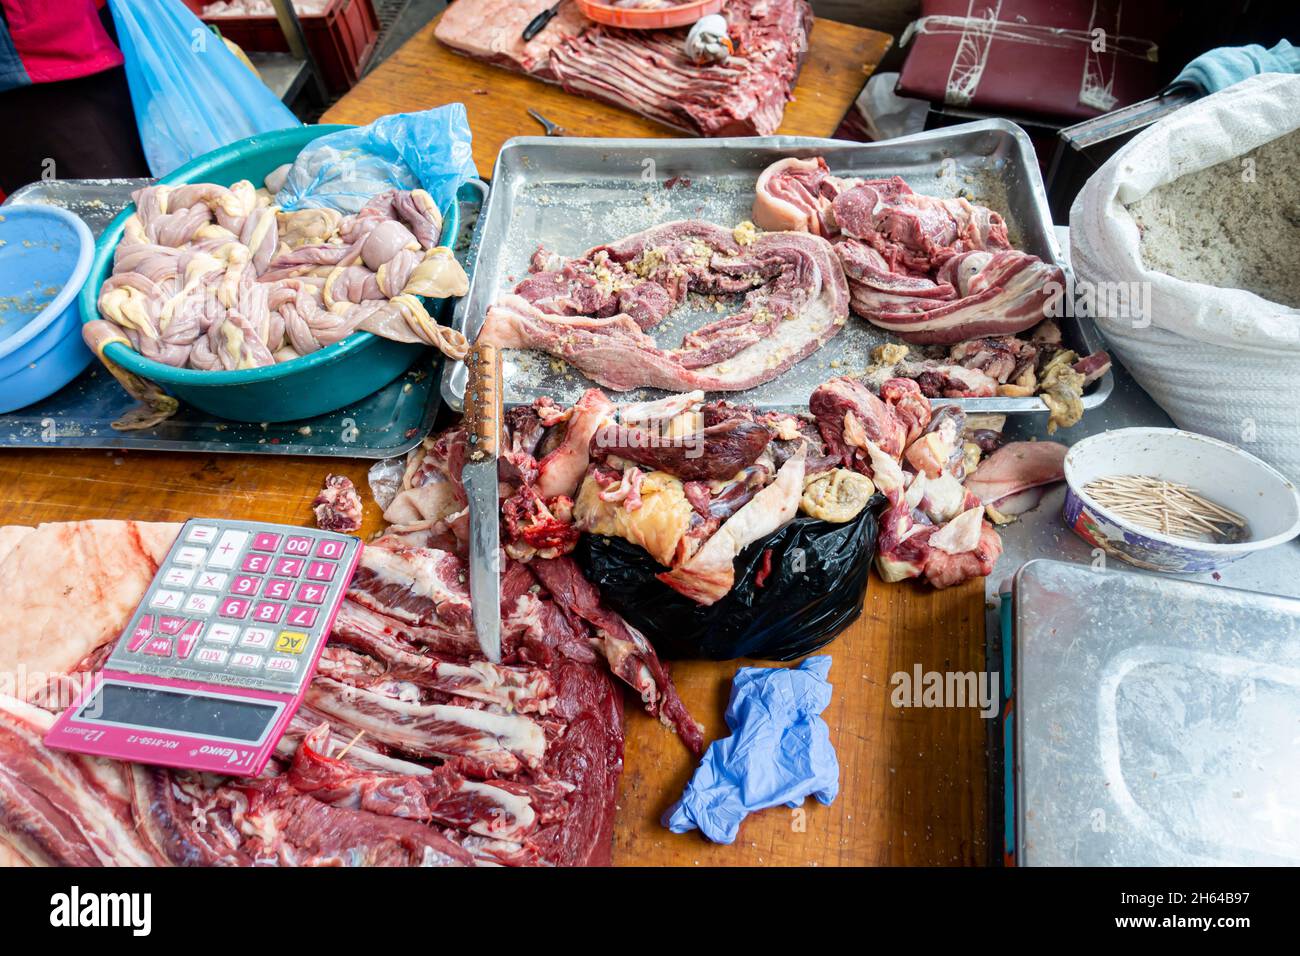 Geschnittenes Pferdefleisch, Giblets auf der Thekendisplay. Fertig verpackt in Qazy, Pferdewurst auf dem Fleischmarkt Altyn Orda, Almaty, Kasachstan Stockfoto